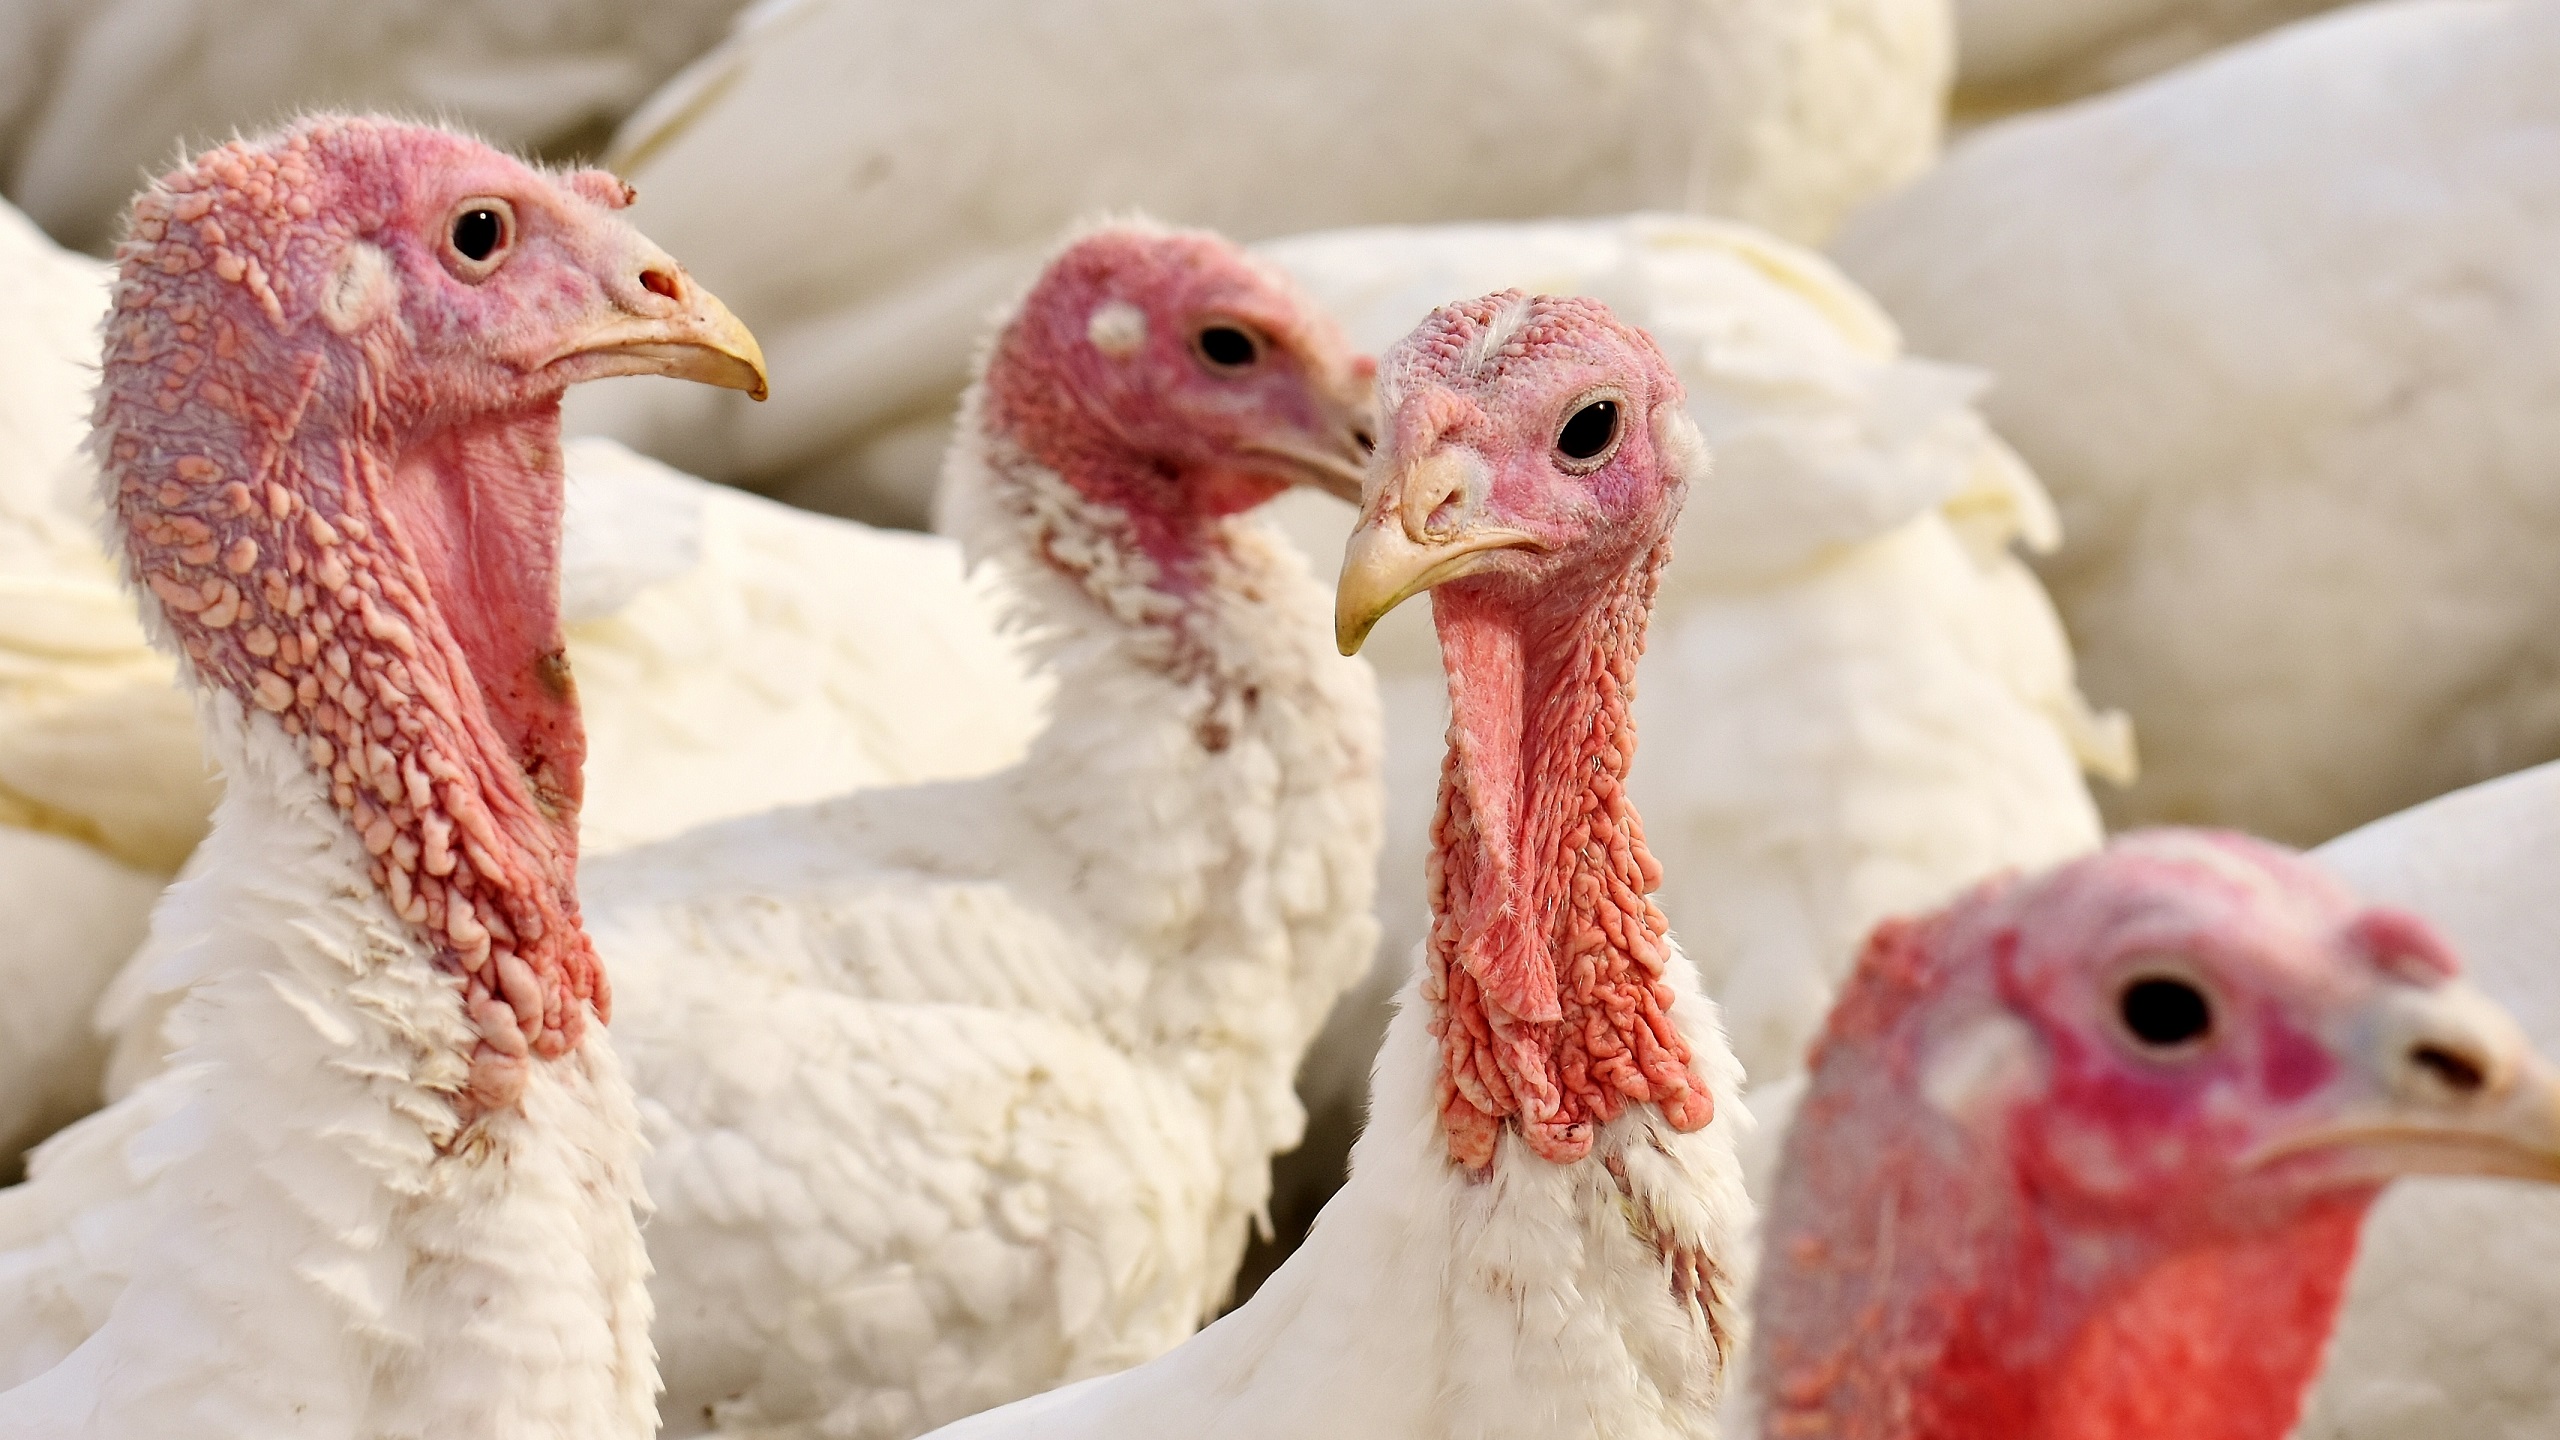 Bird Flu Found on Turkey Farm in Israel